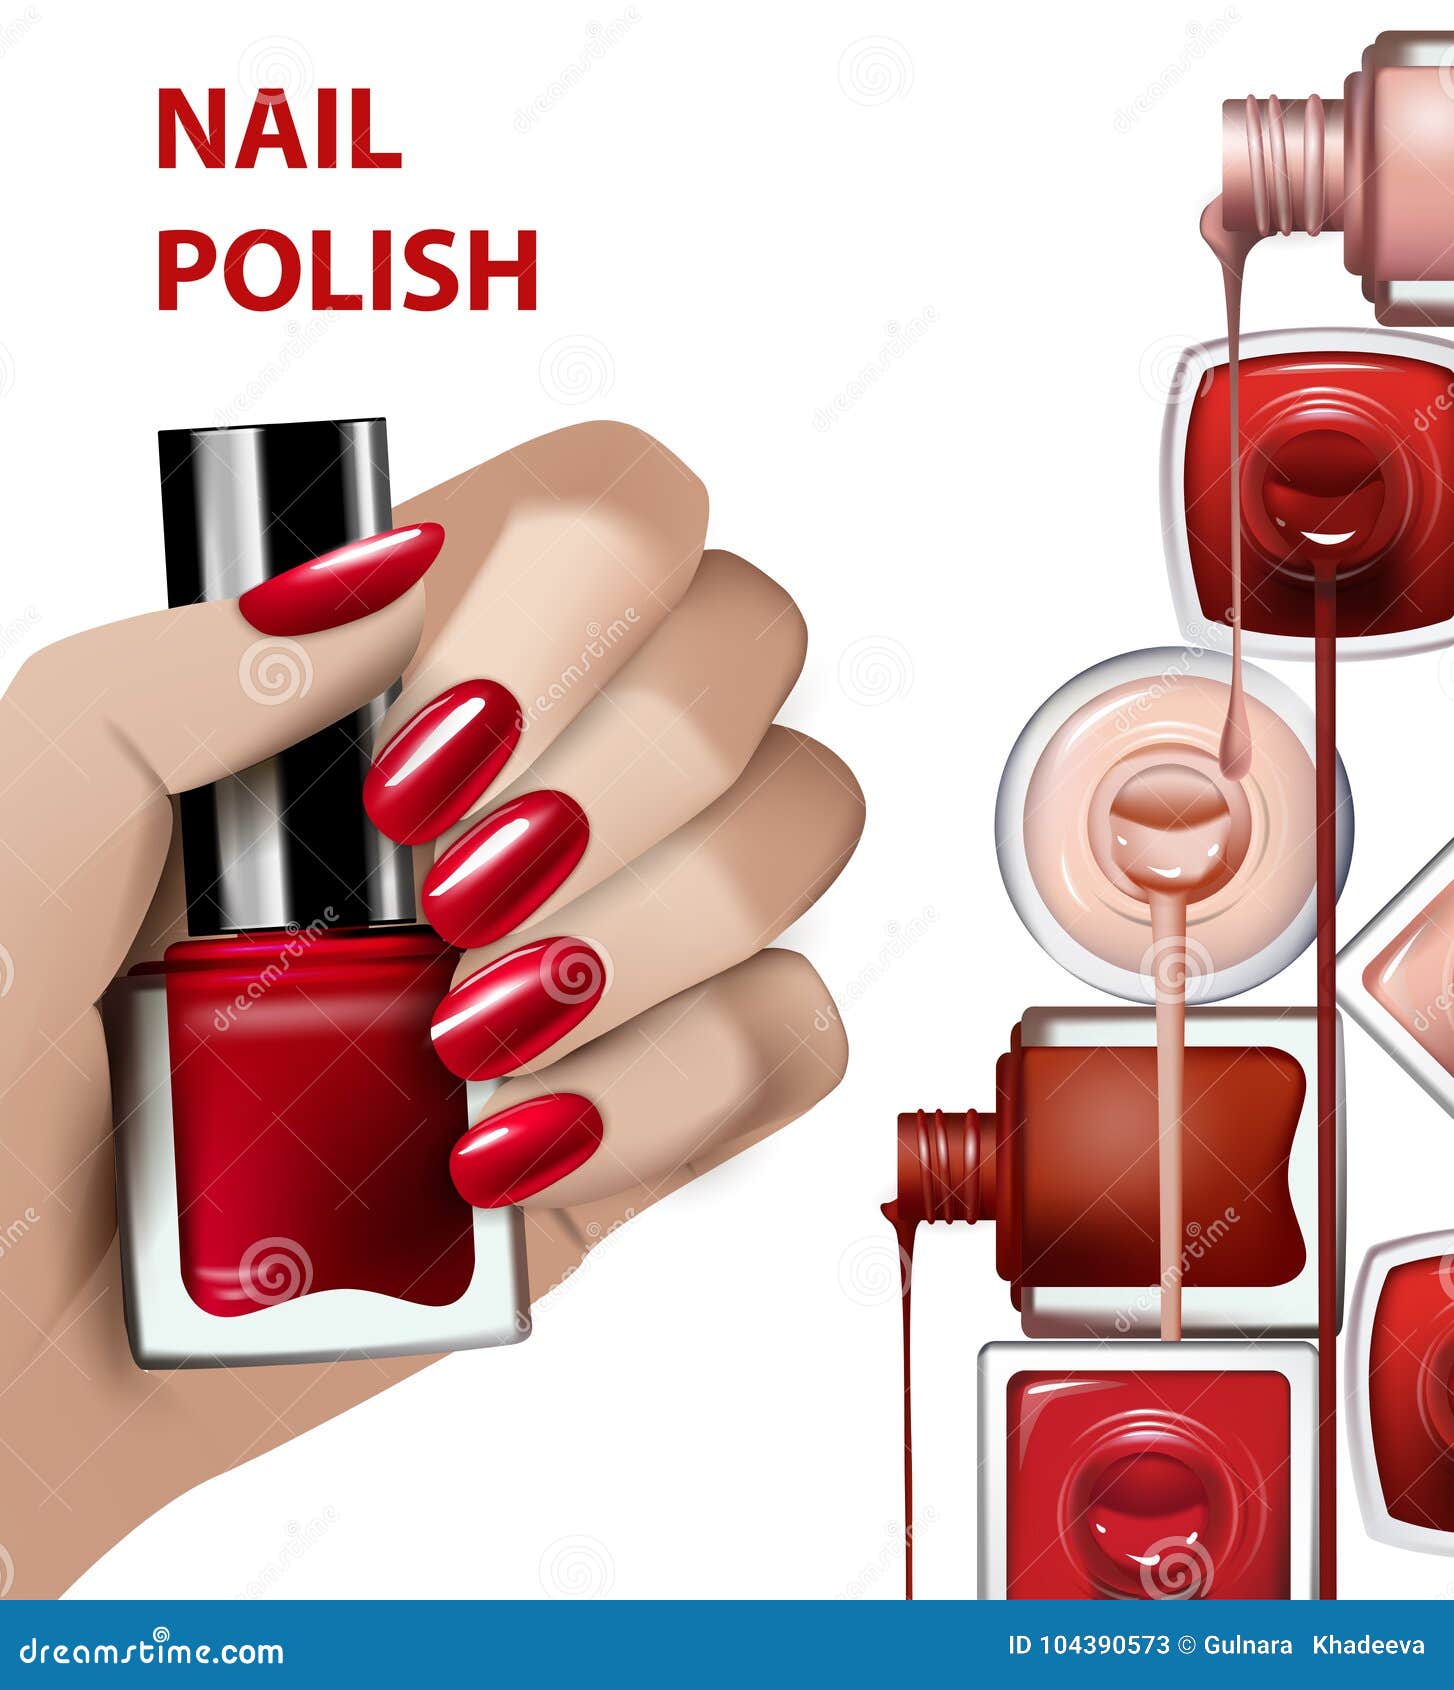 Nail Polish Hand Stock Vector Illustration and Royalty Free Nail Polish  Hand Clipart